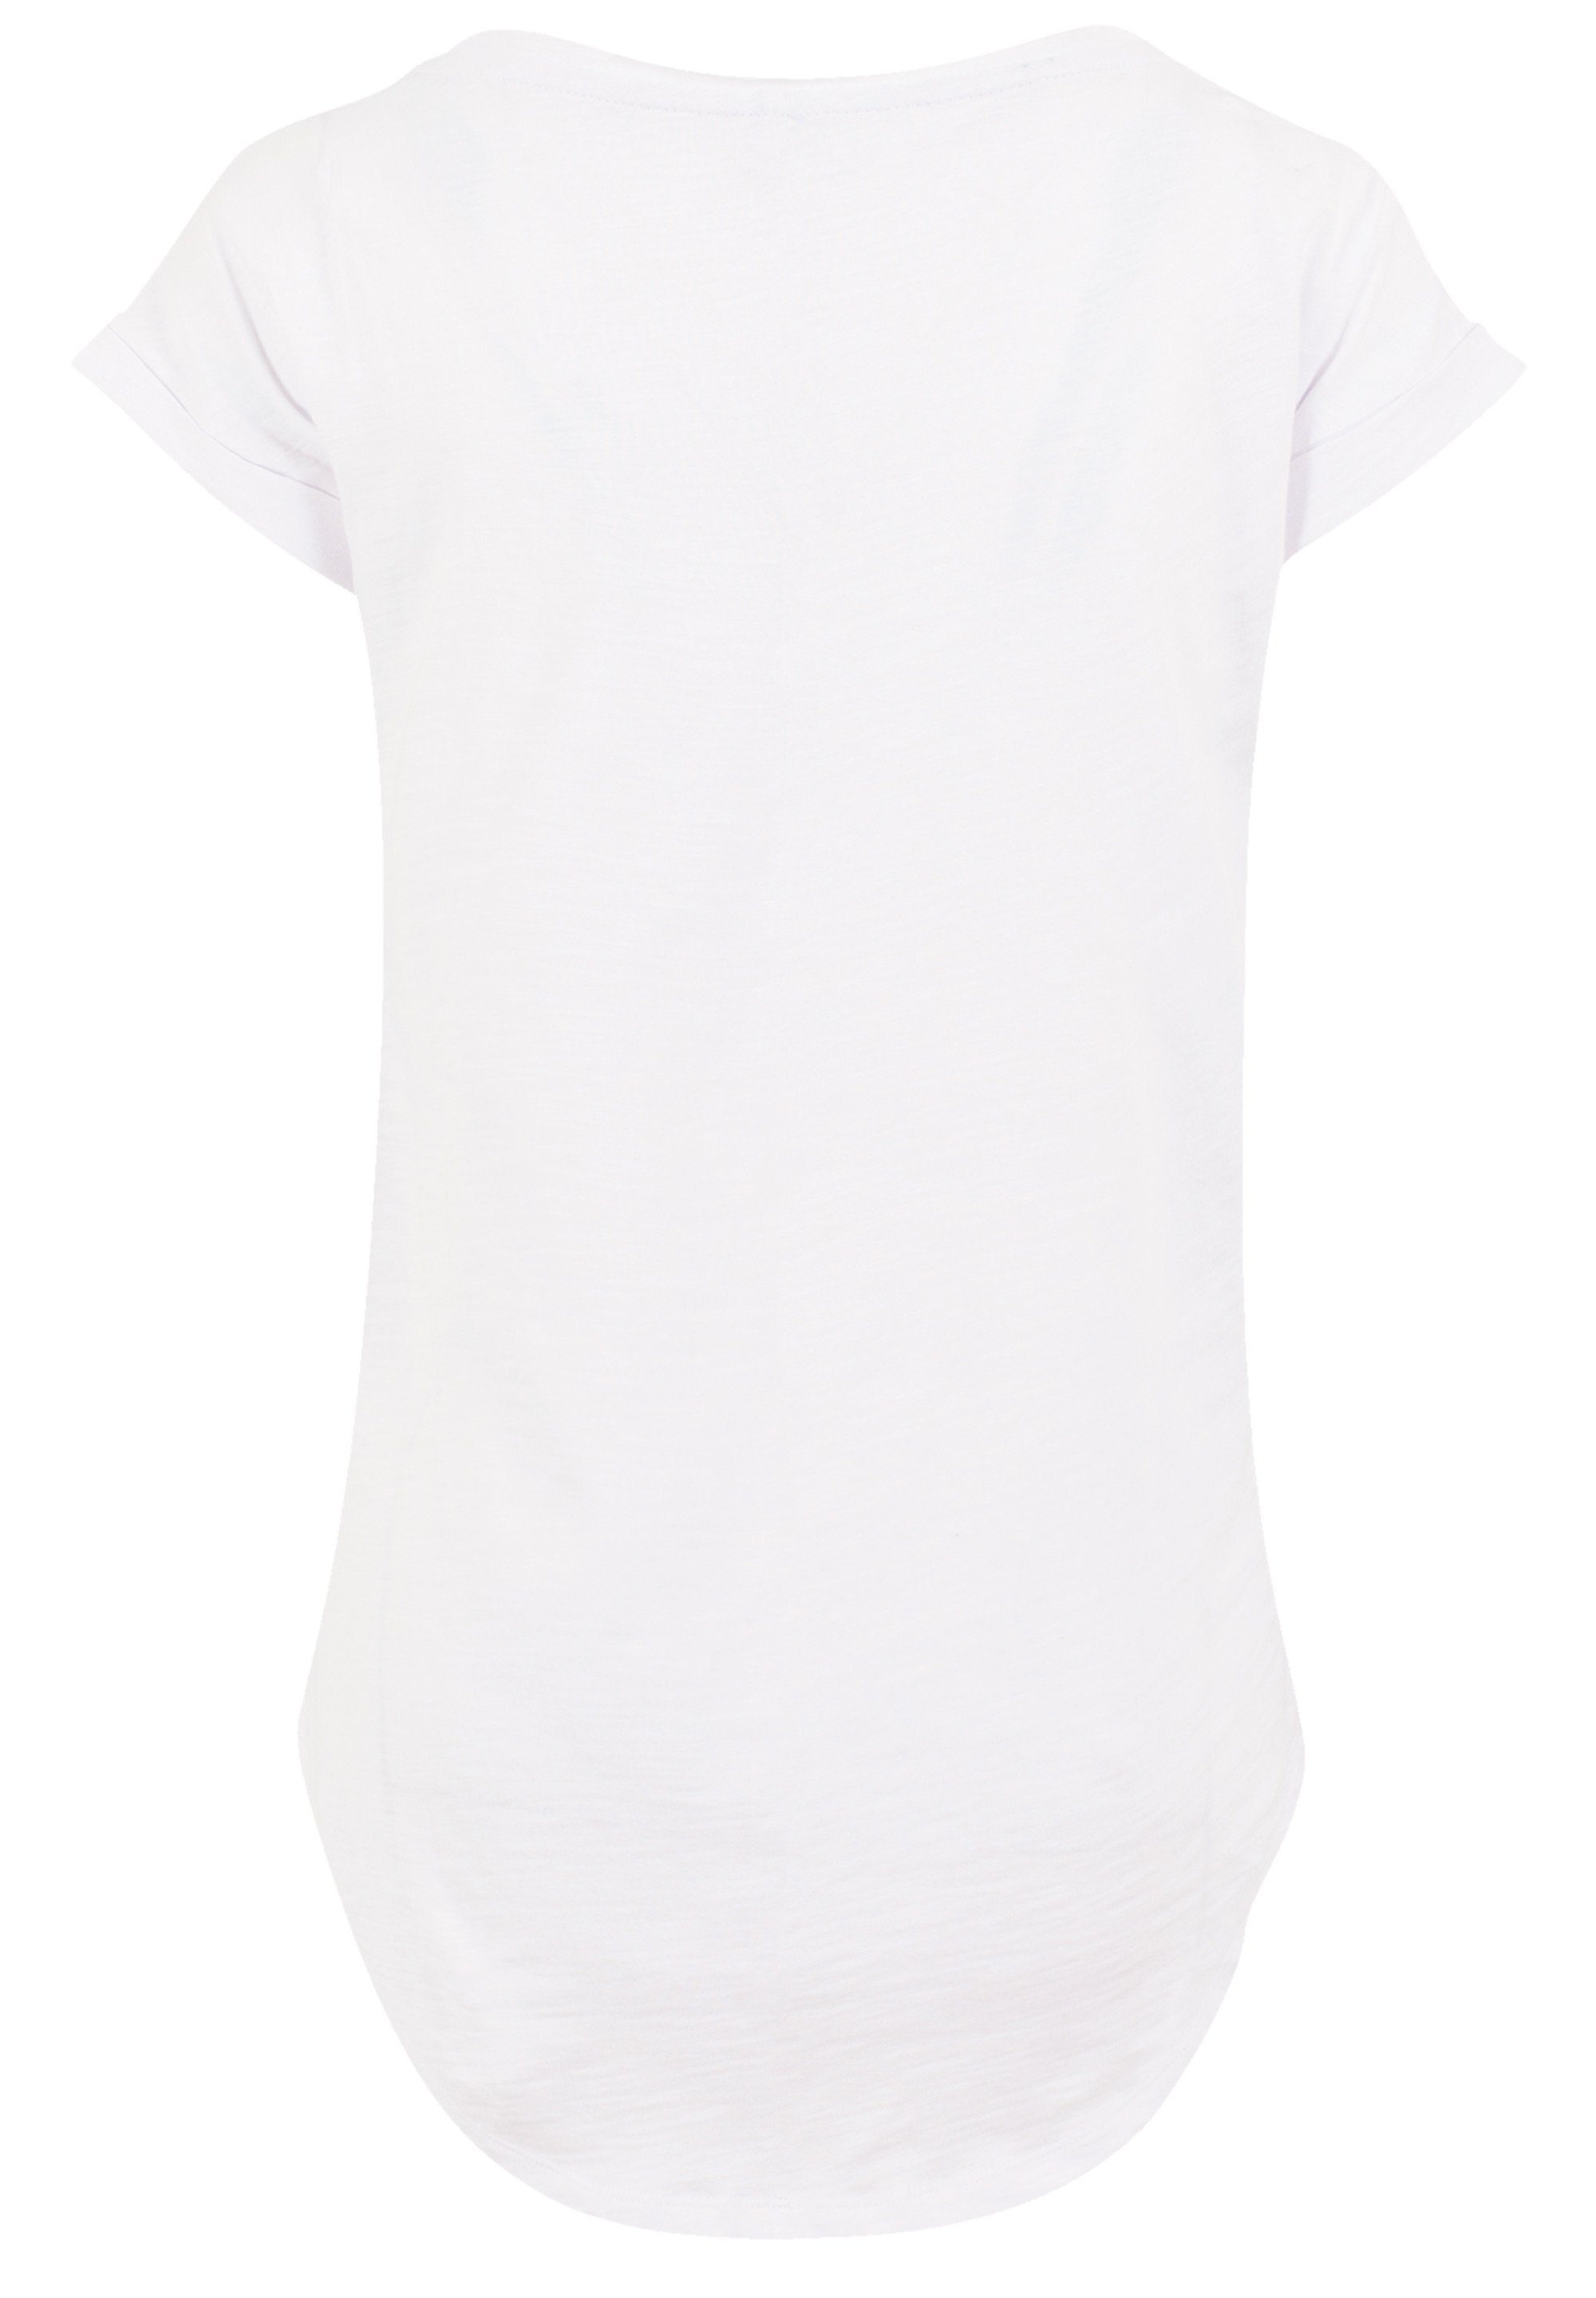 Baltic F4NT4STIC Coast Sehr T-Shirt PLUS Baumwollstoff Tragekomfort mit SIZE Print, weicher hohem